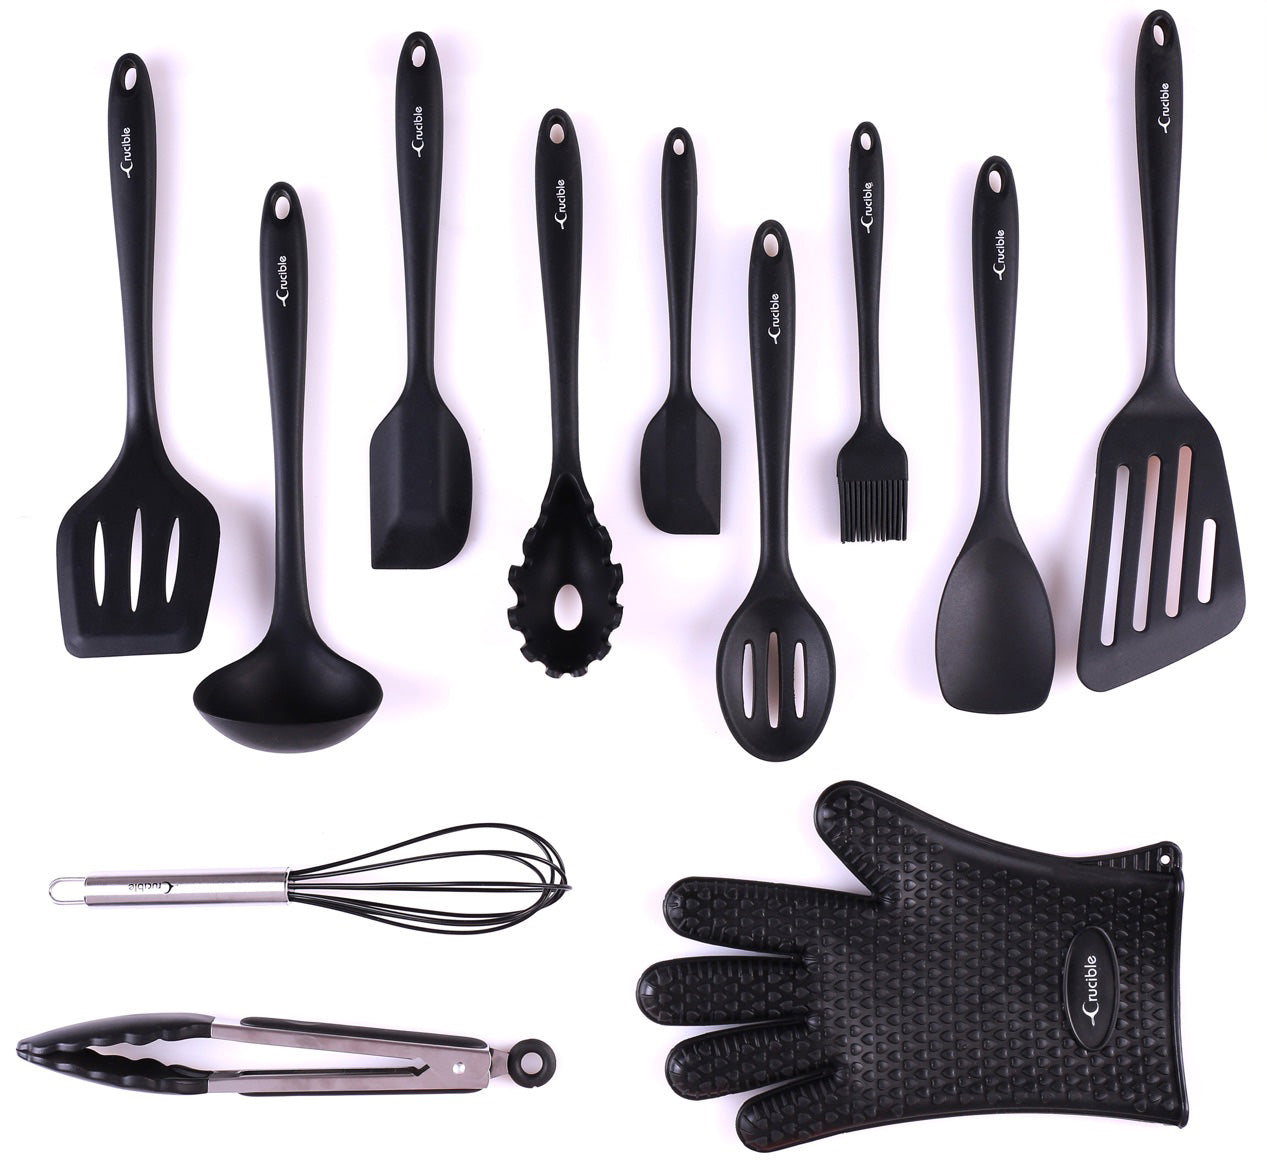 مجموعة أواني المطبخ، مجموعة أدوات المطبخ والخبز السيليكون الكاملة المكونة من 12 قطعة، مجموعة أواني الطبخ، أدوات المطبخ - أسود - Utensilios de Cocinas